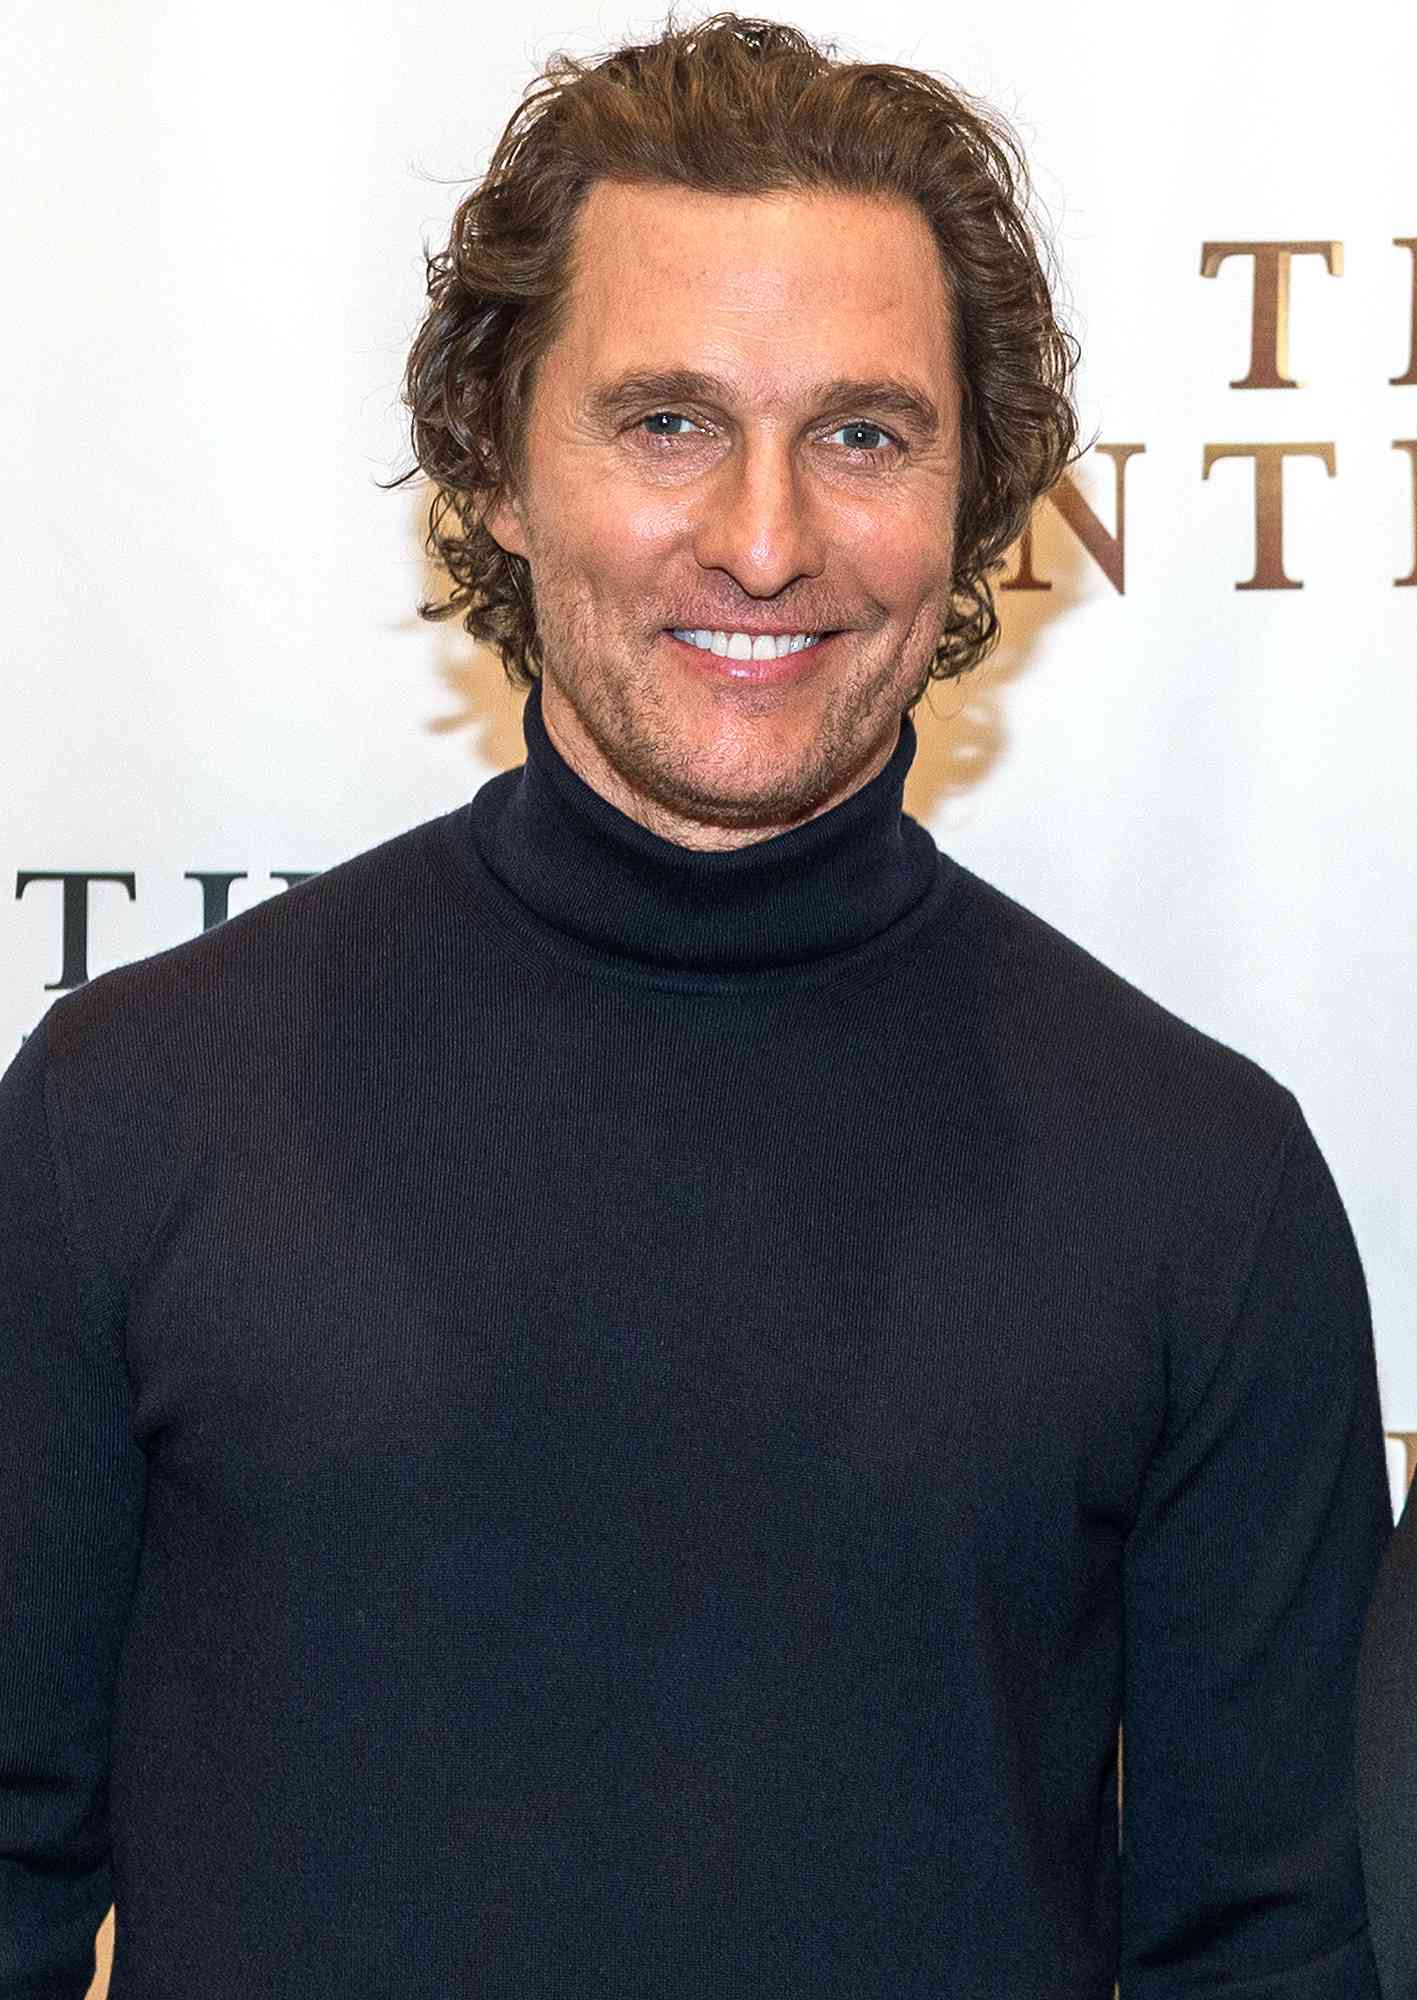 'Mixologist' Matthew McConaughey Mengatakan Dia Menggunakan 'Ramuan Buatan Rumah' untuk Menciptakan Aroma Khasnya